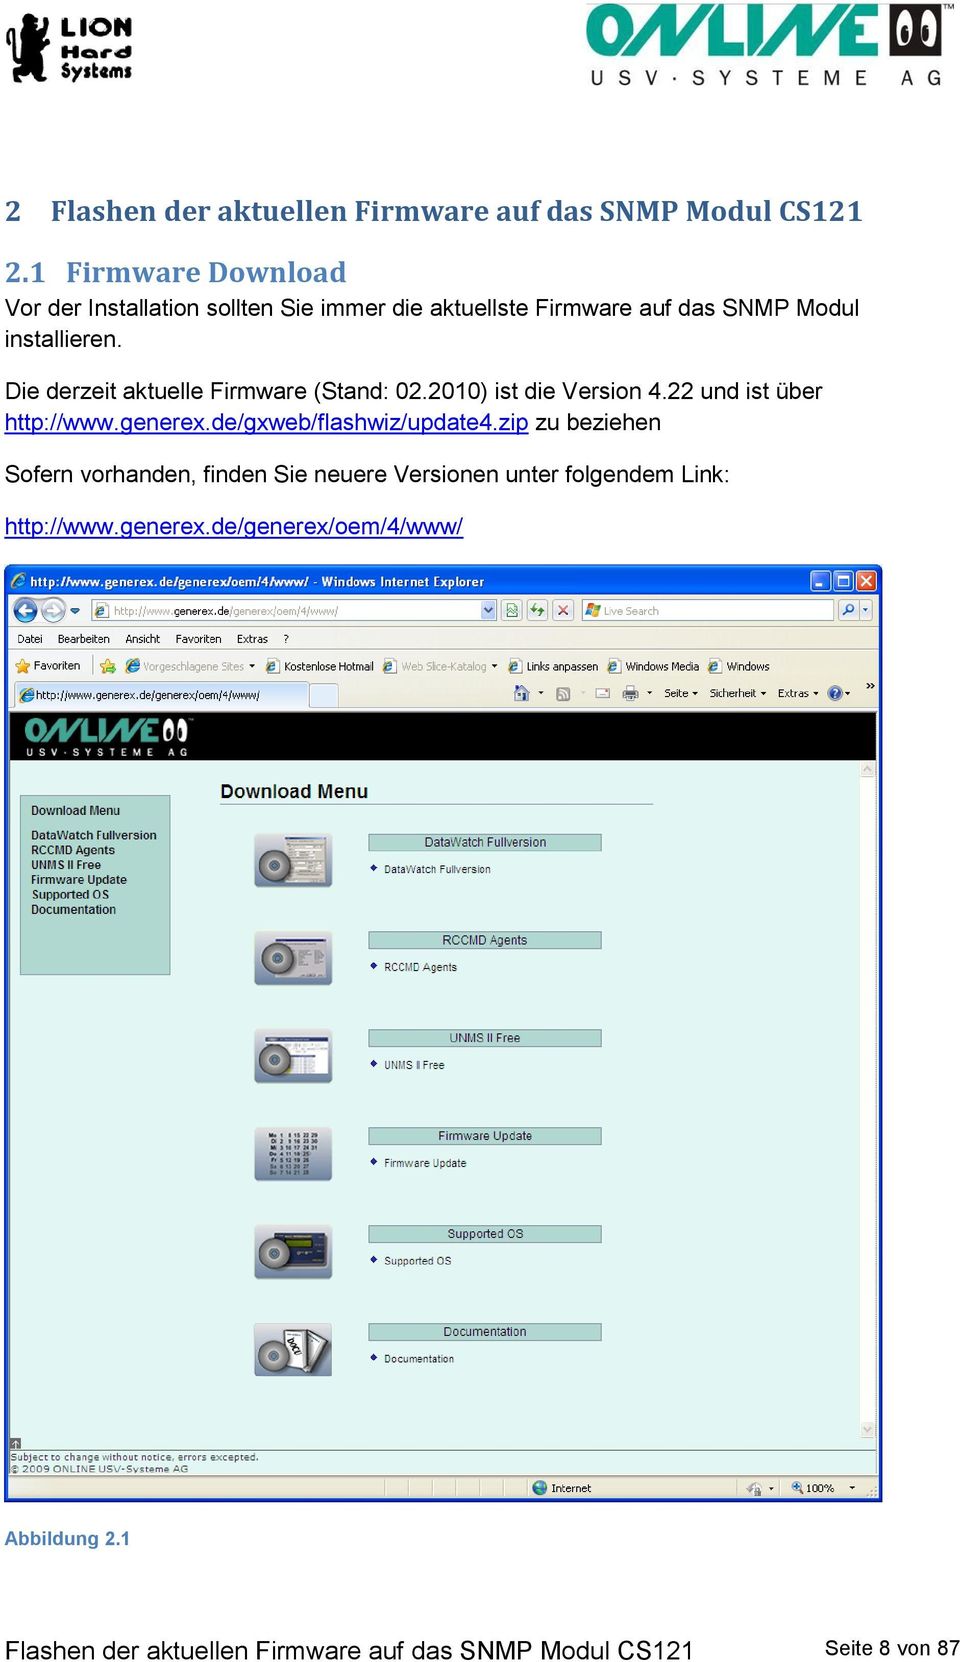 Die derzeit aktuelle Firmware (Stand: 02.2010) ist die Version 4.22 und ist über http://www.generex.de/gxweb/flashwiz/update4.